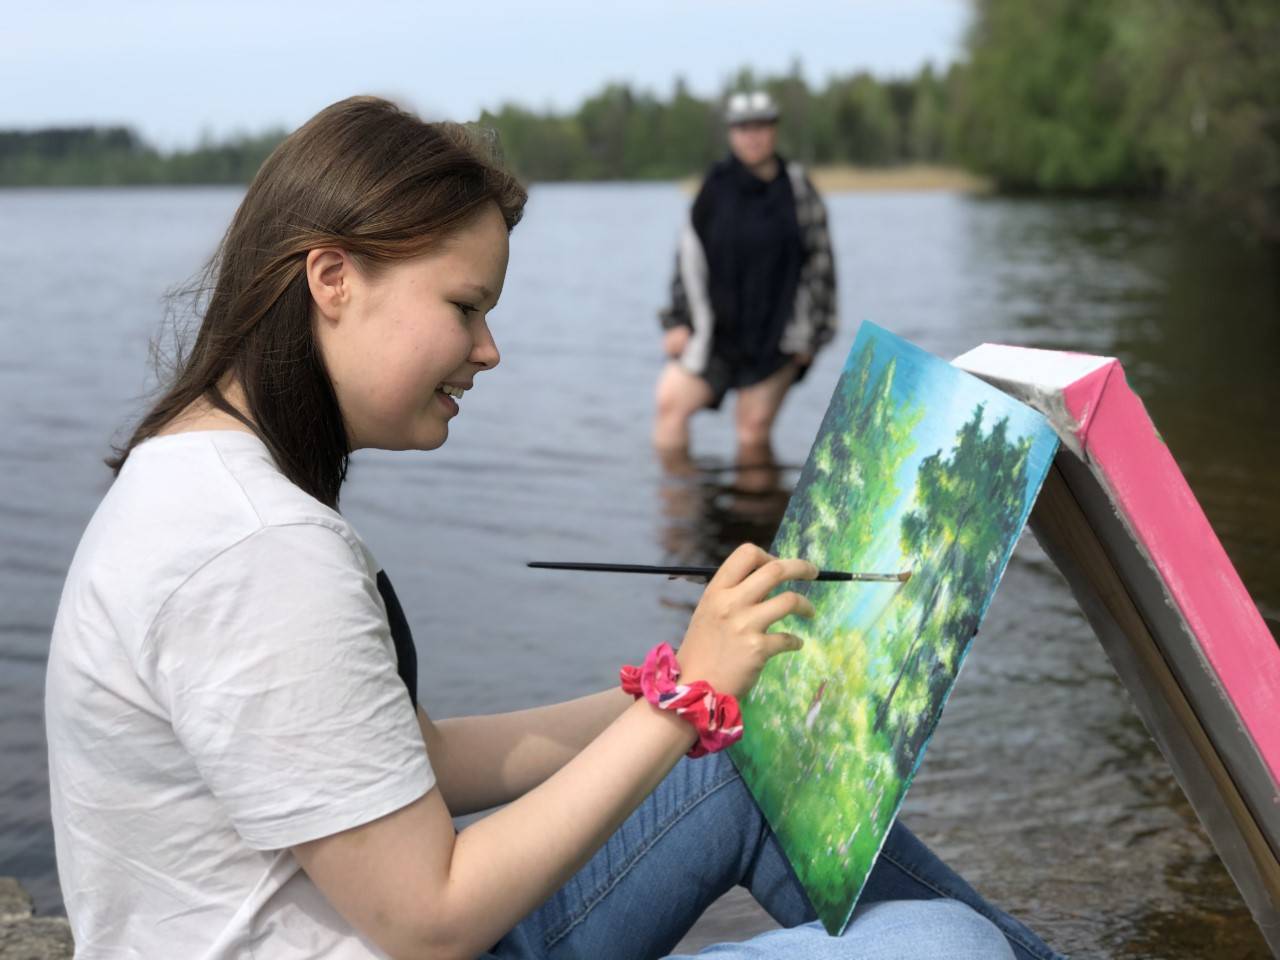 Opiskelija maalaa rantaviivassa istuen, toinen opiskelija kahlaa taustalla